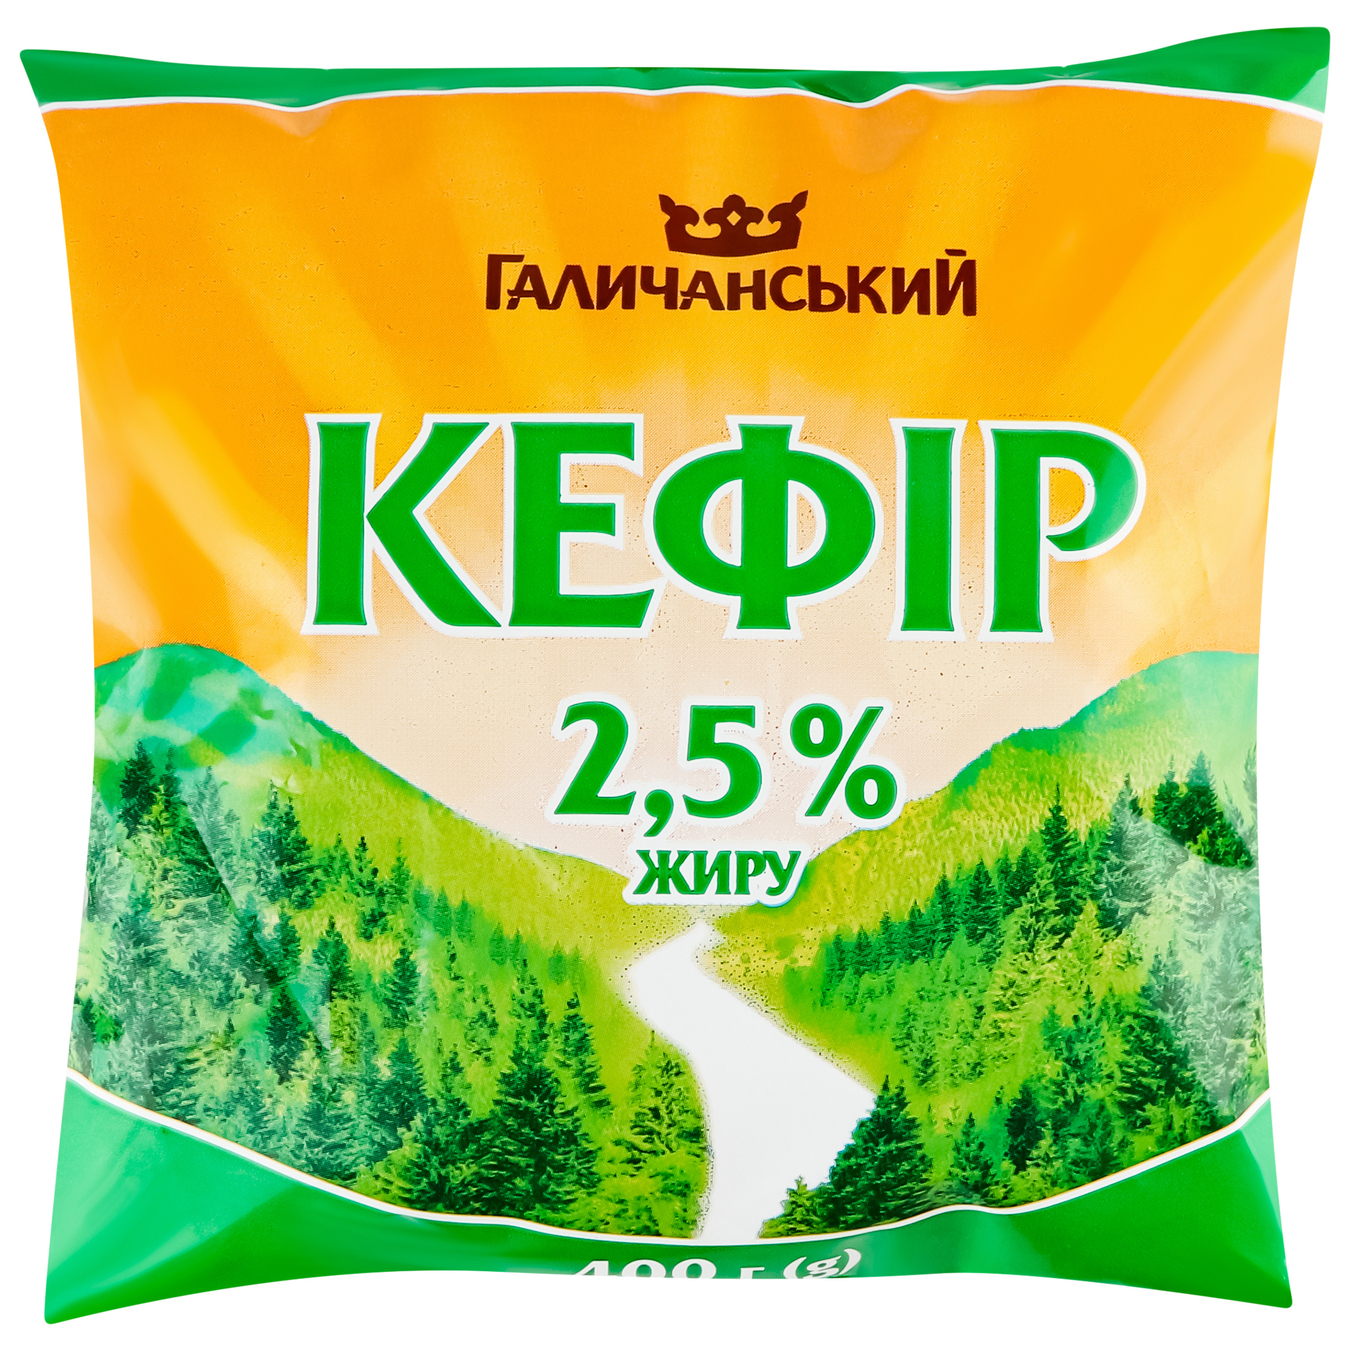 Кефир Галичанский 2,5% 400г пленка